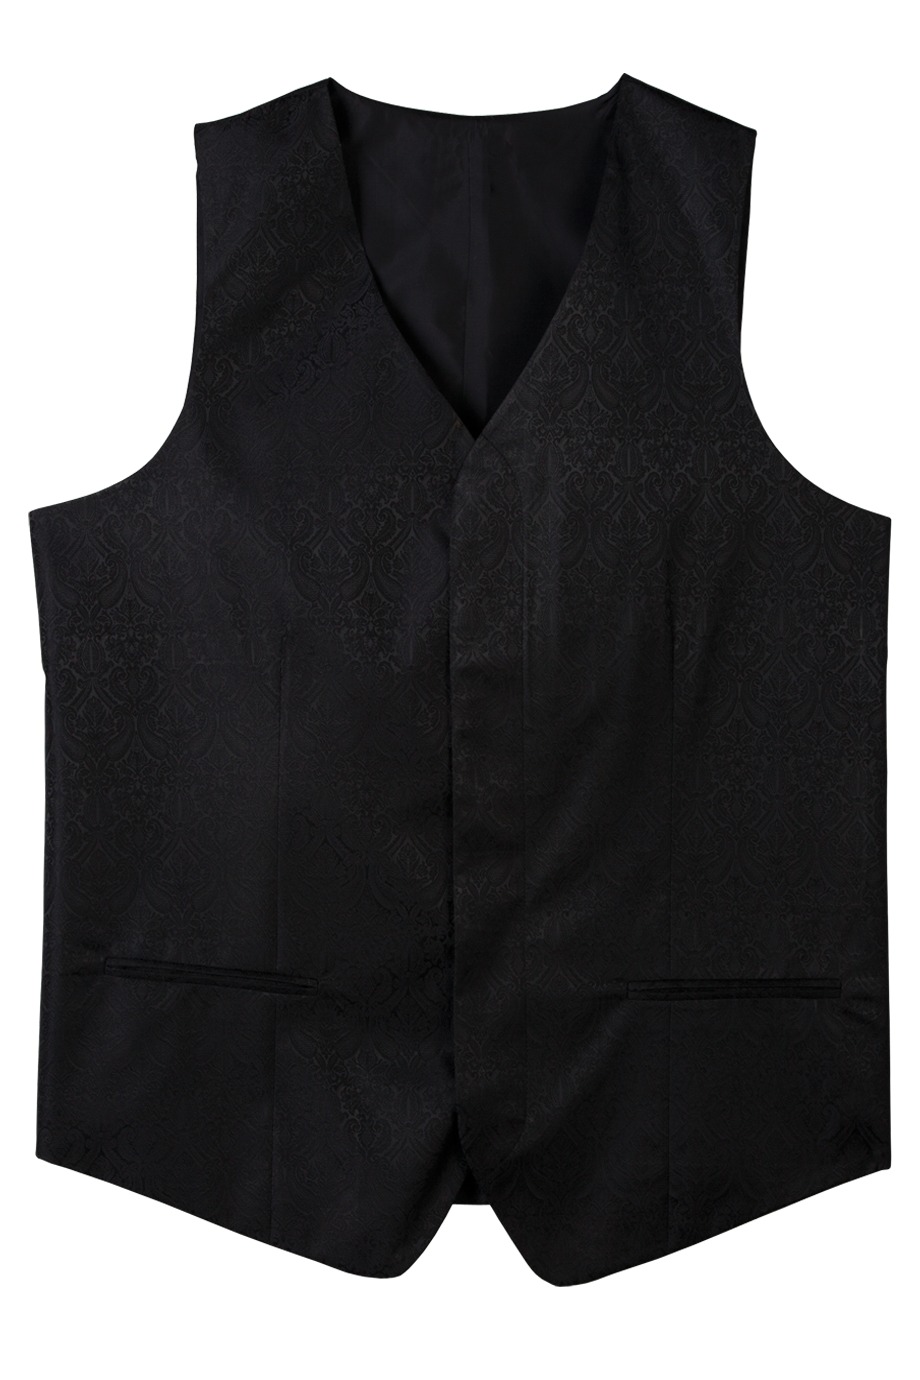 Edwards Garment 4491 - Men's Paisley Vest